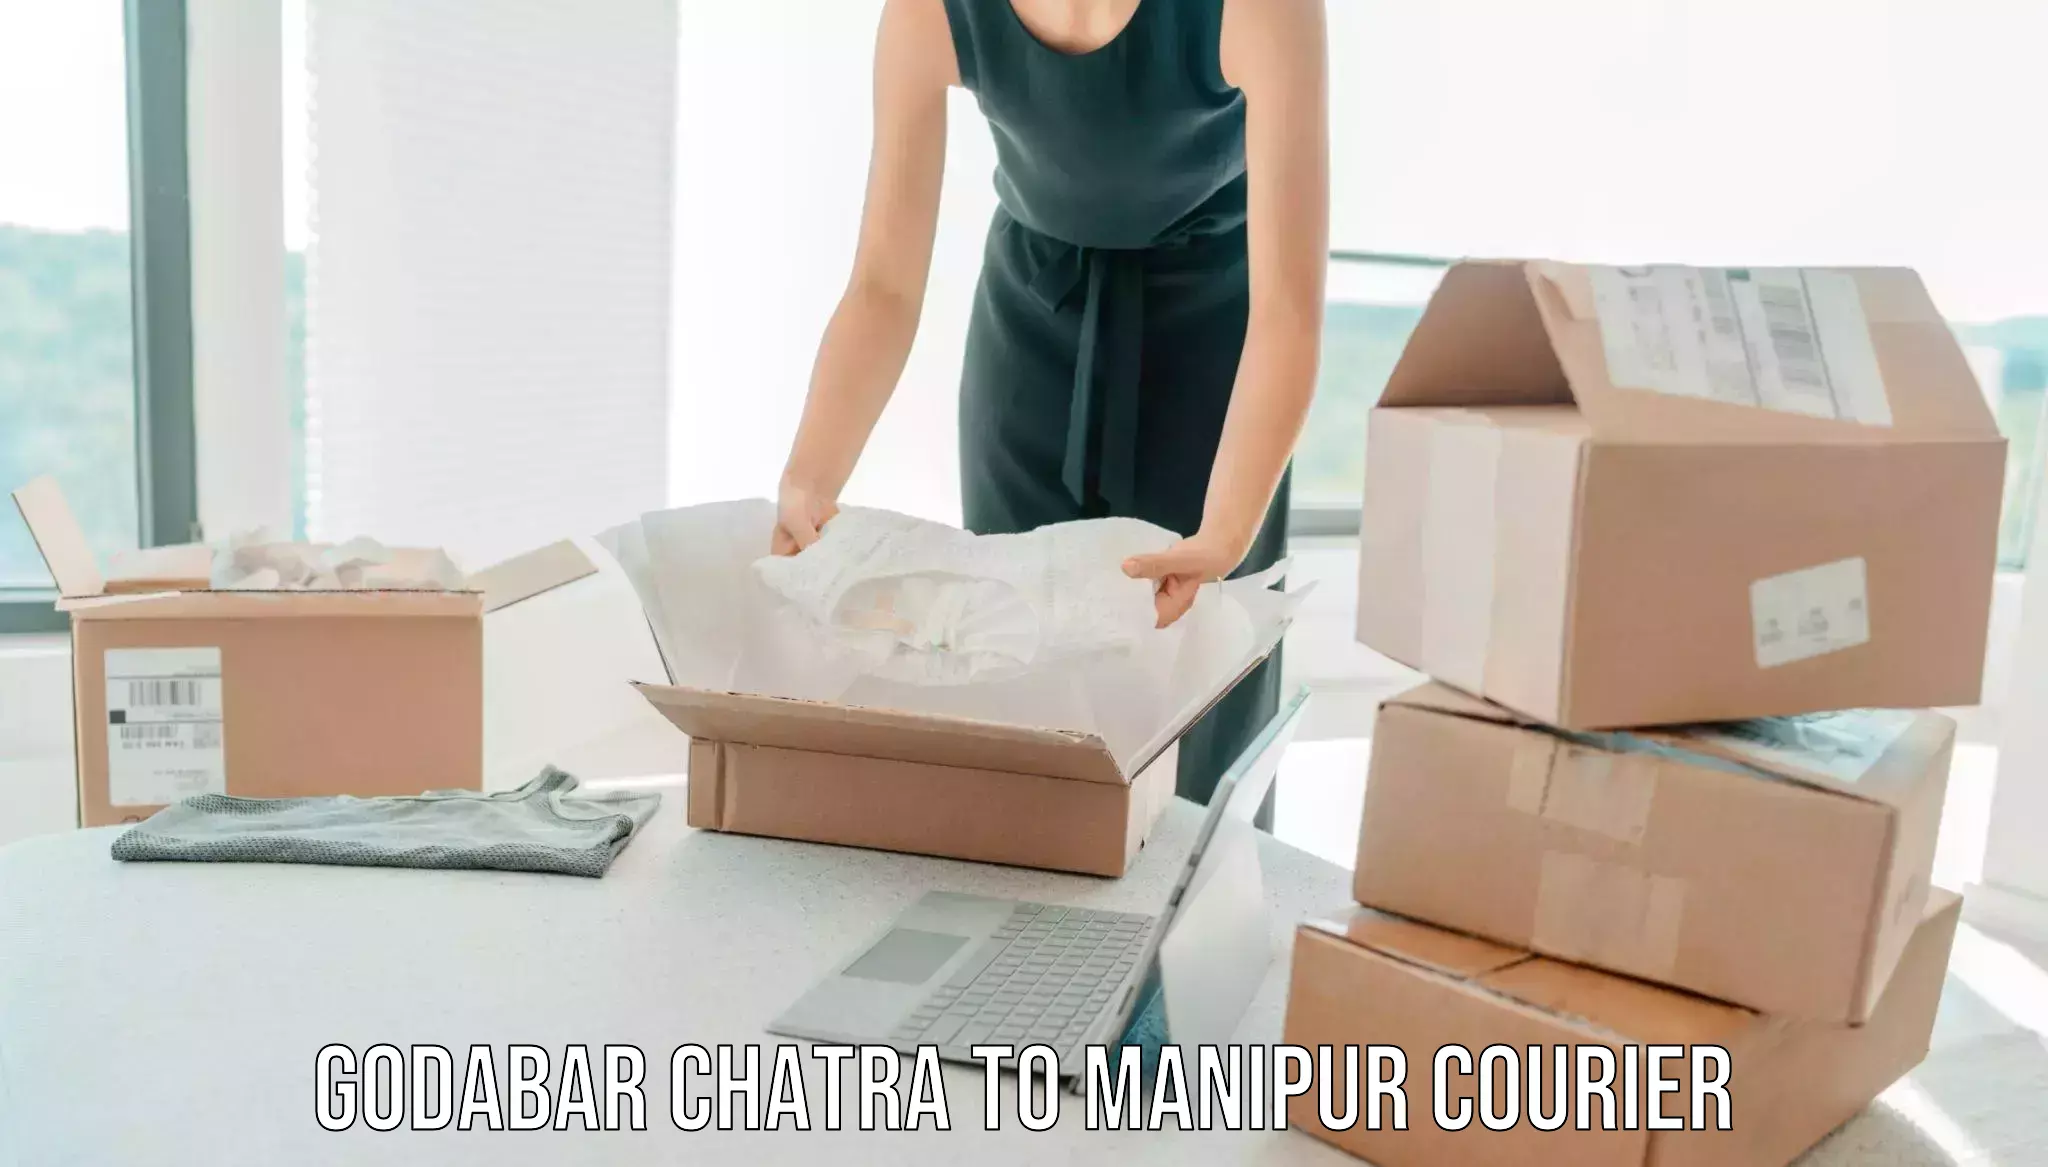 Professional packing services Godabar Chatra to Senapati